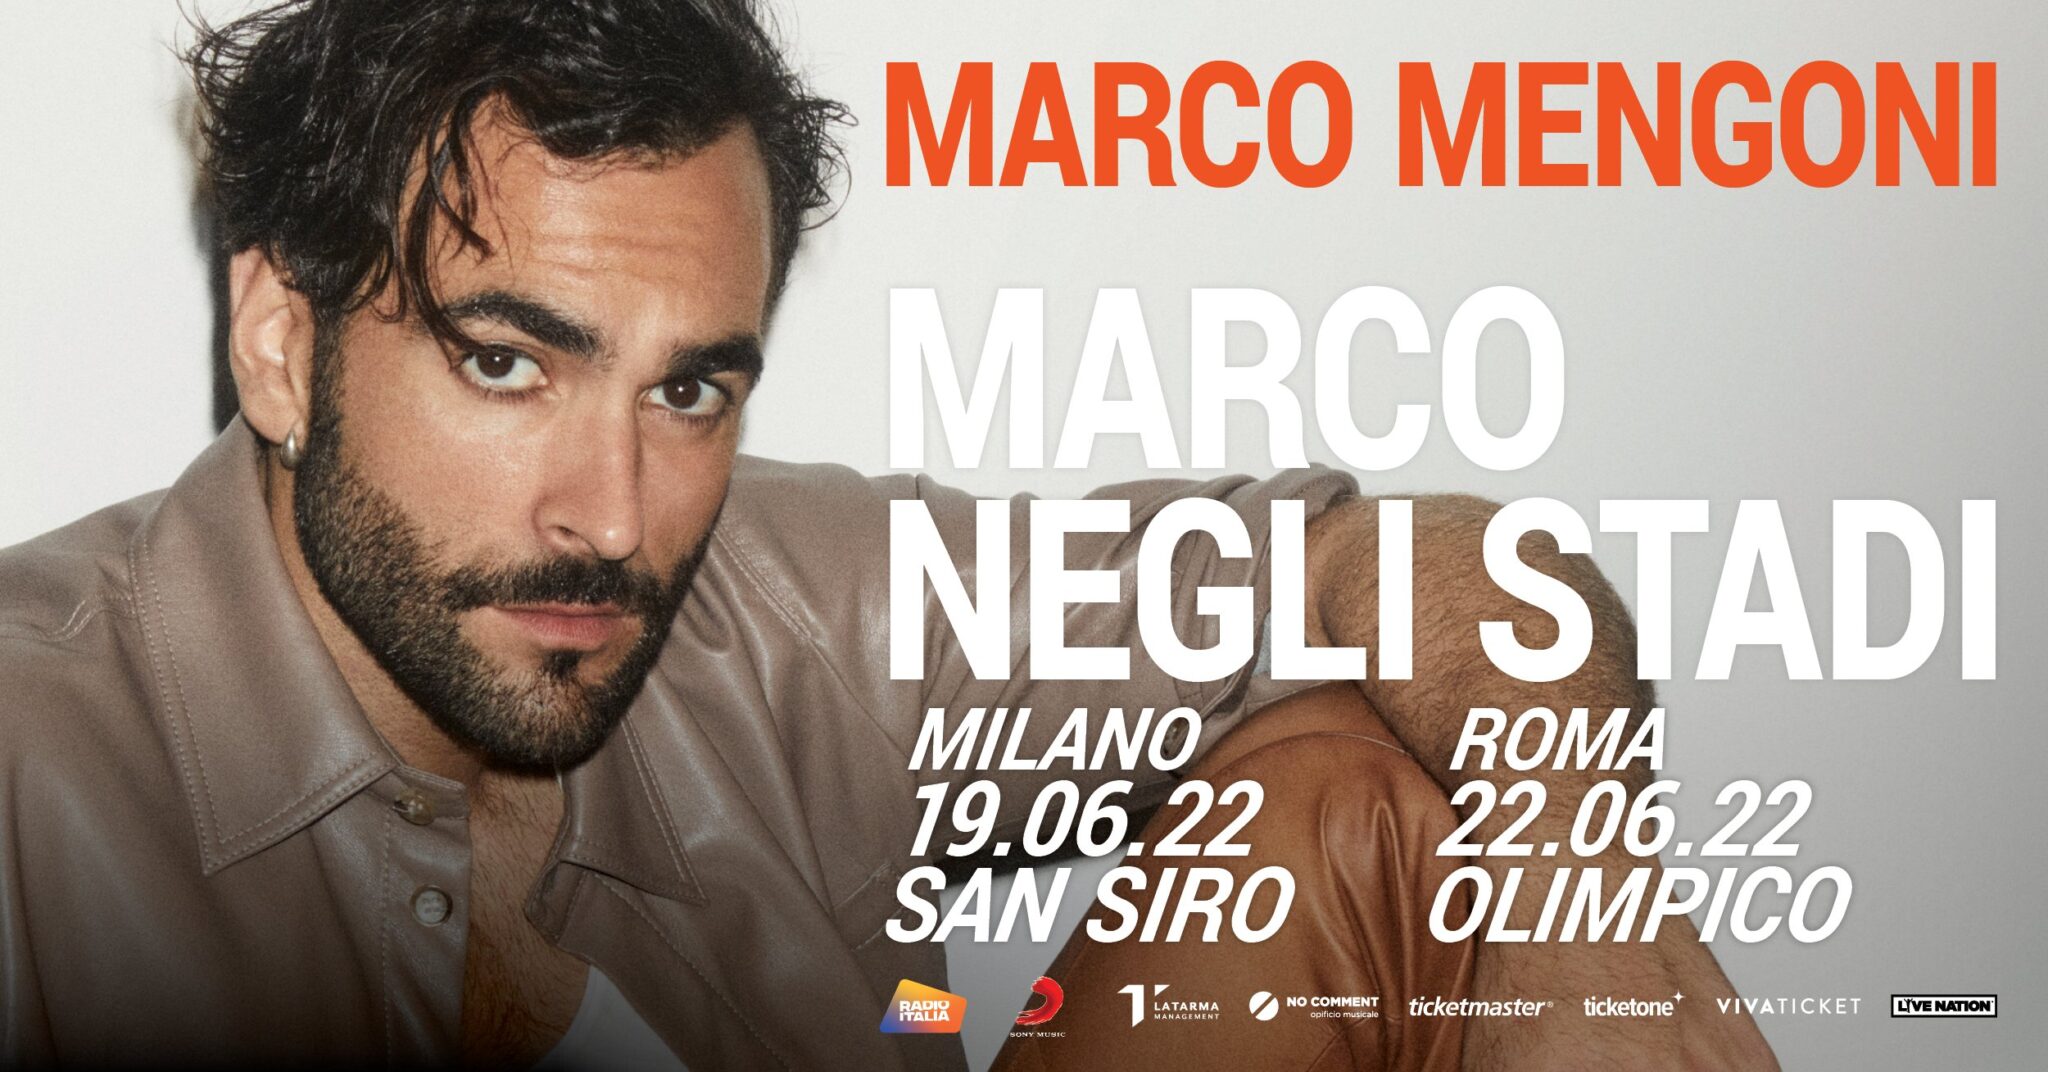 Marco Mengoni live negli stadi info, date e biglietti